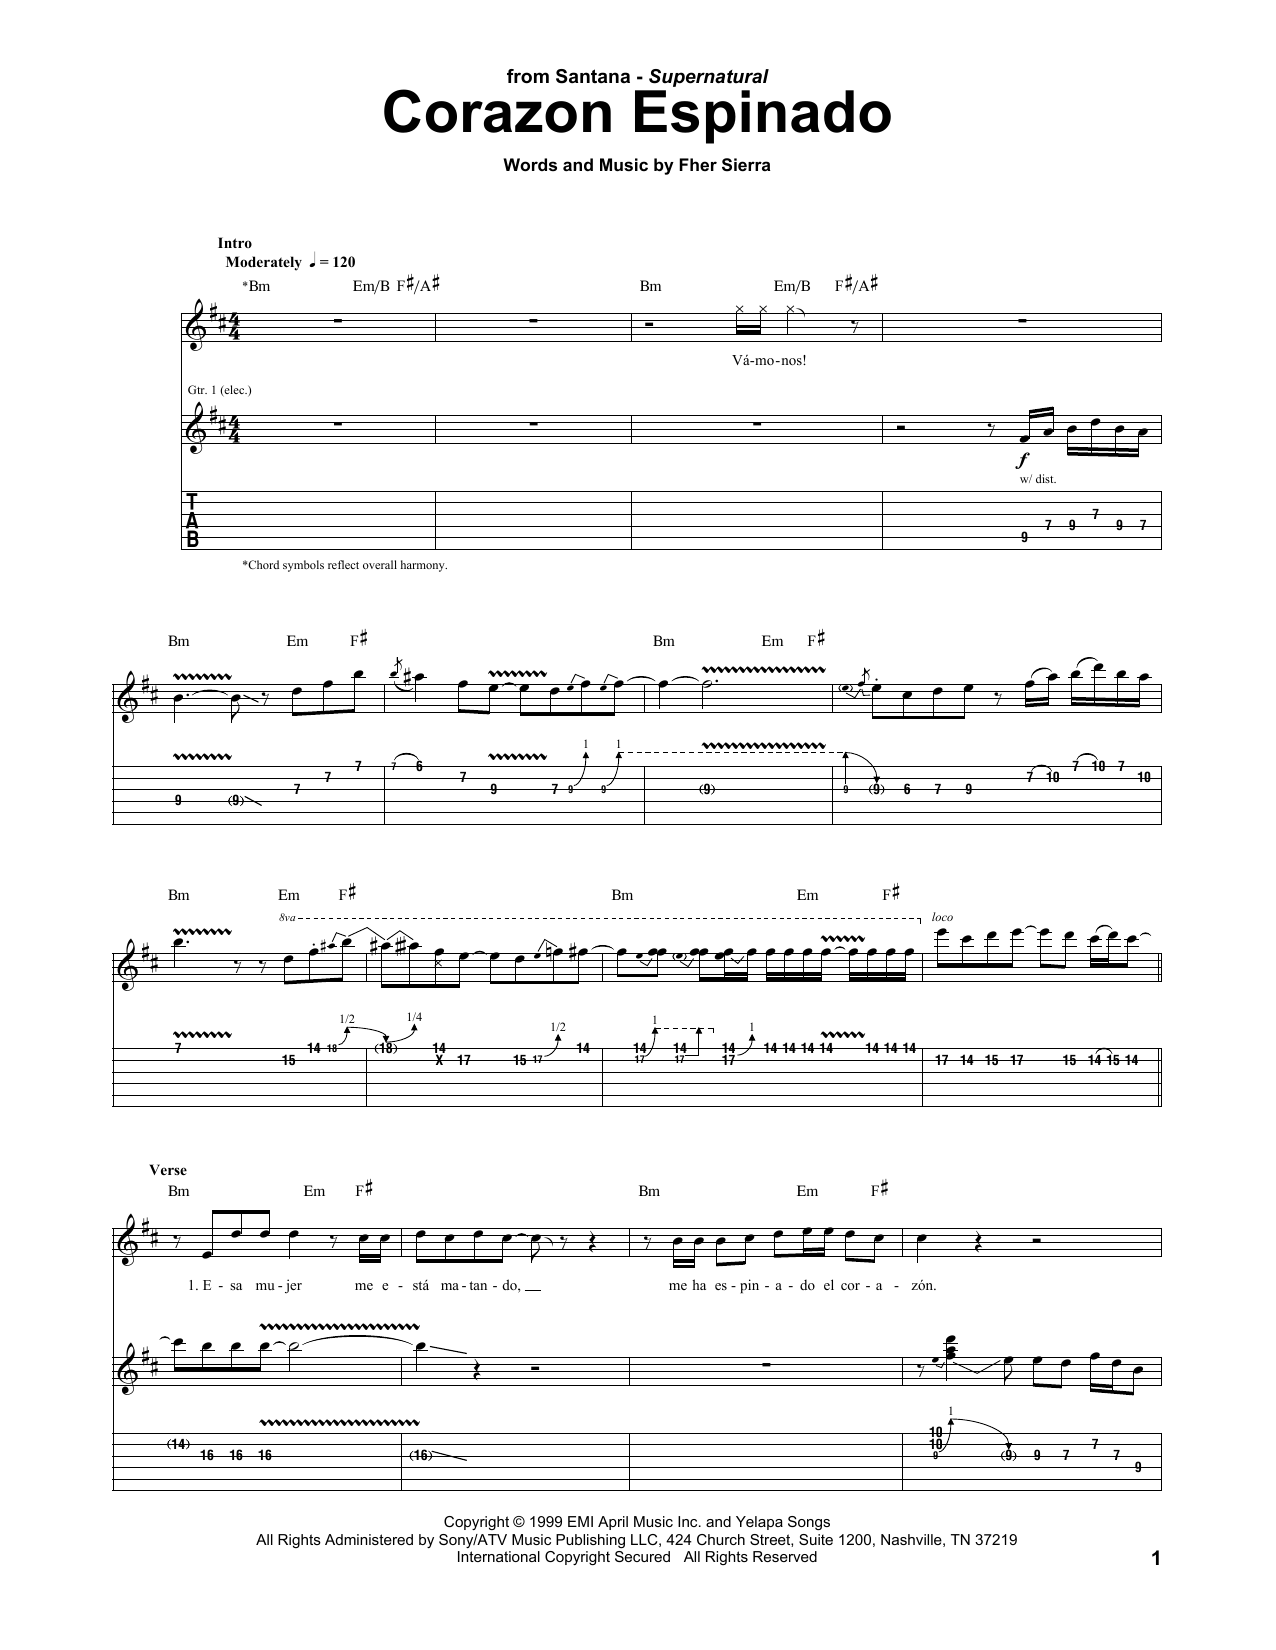 Santana Corazon Espinado Sheet Music Notes & Chords for Guitar Tab - Download or Print PDF